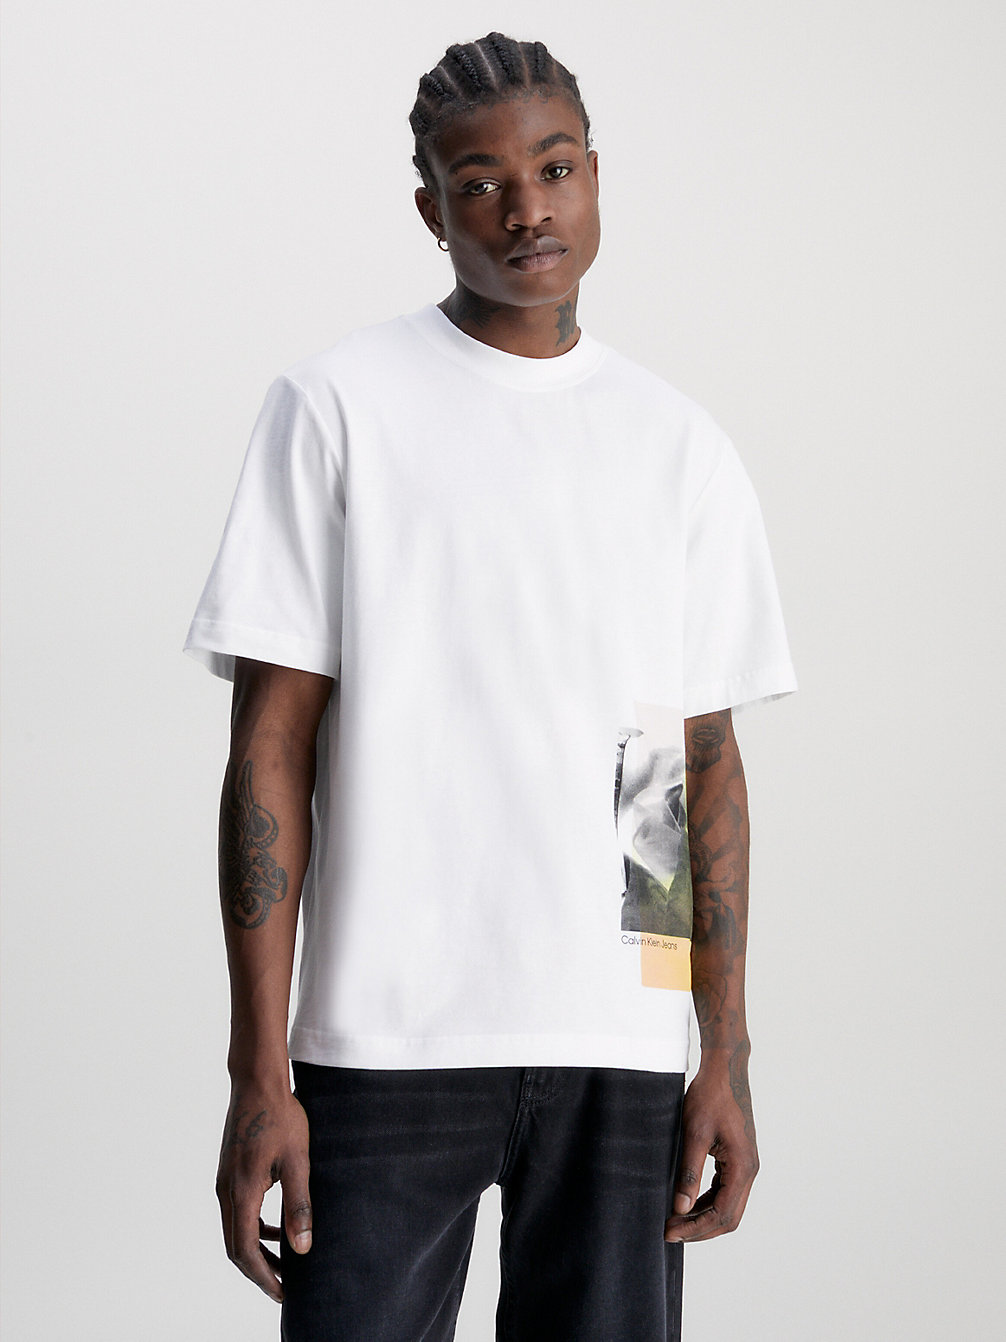 BRIGHT WHITE > Swobodny T-Shirt Z Nadrukiem Ze Zdjęcia > undefined Mężczyźni - Calvin Klein